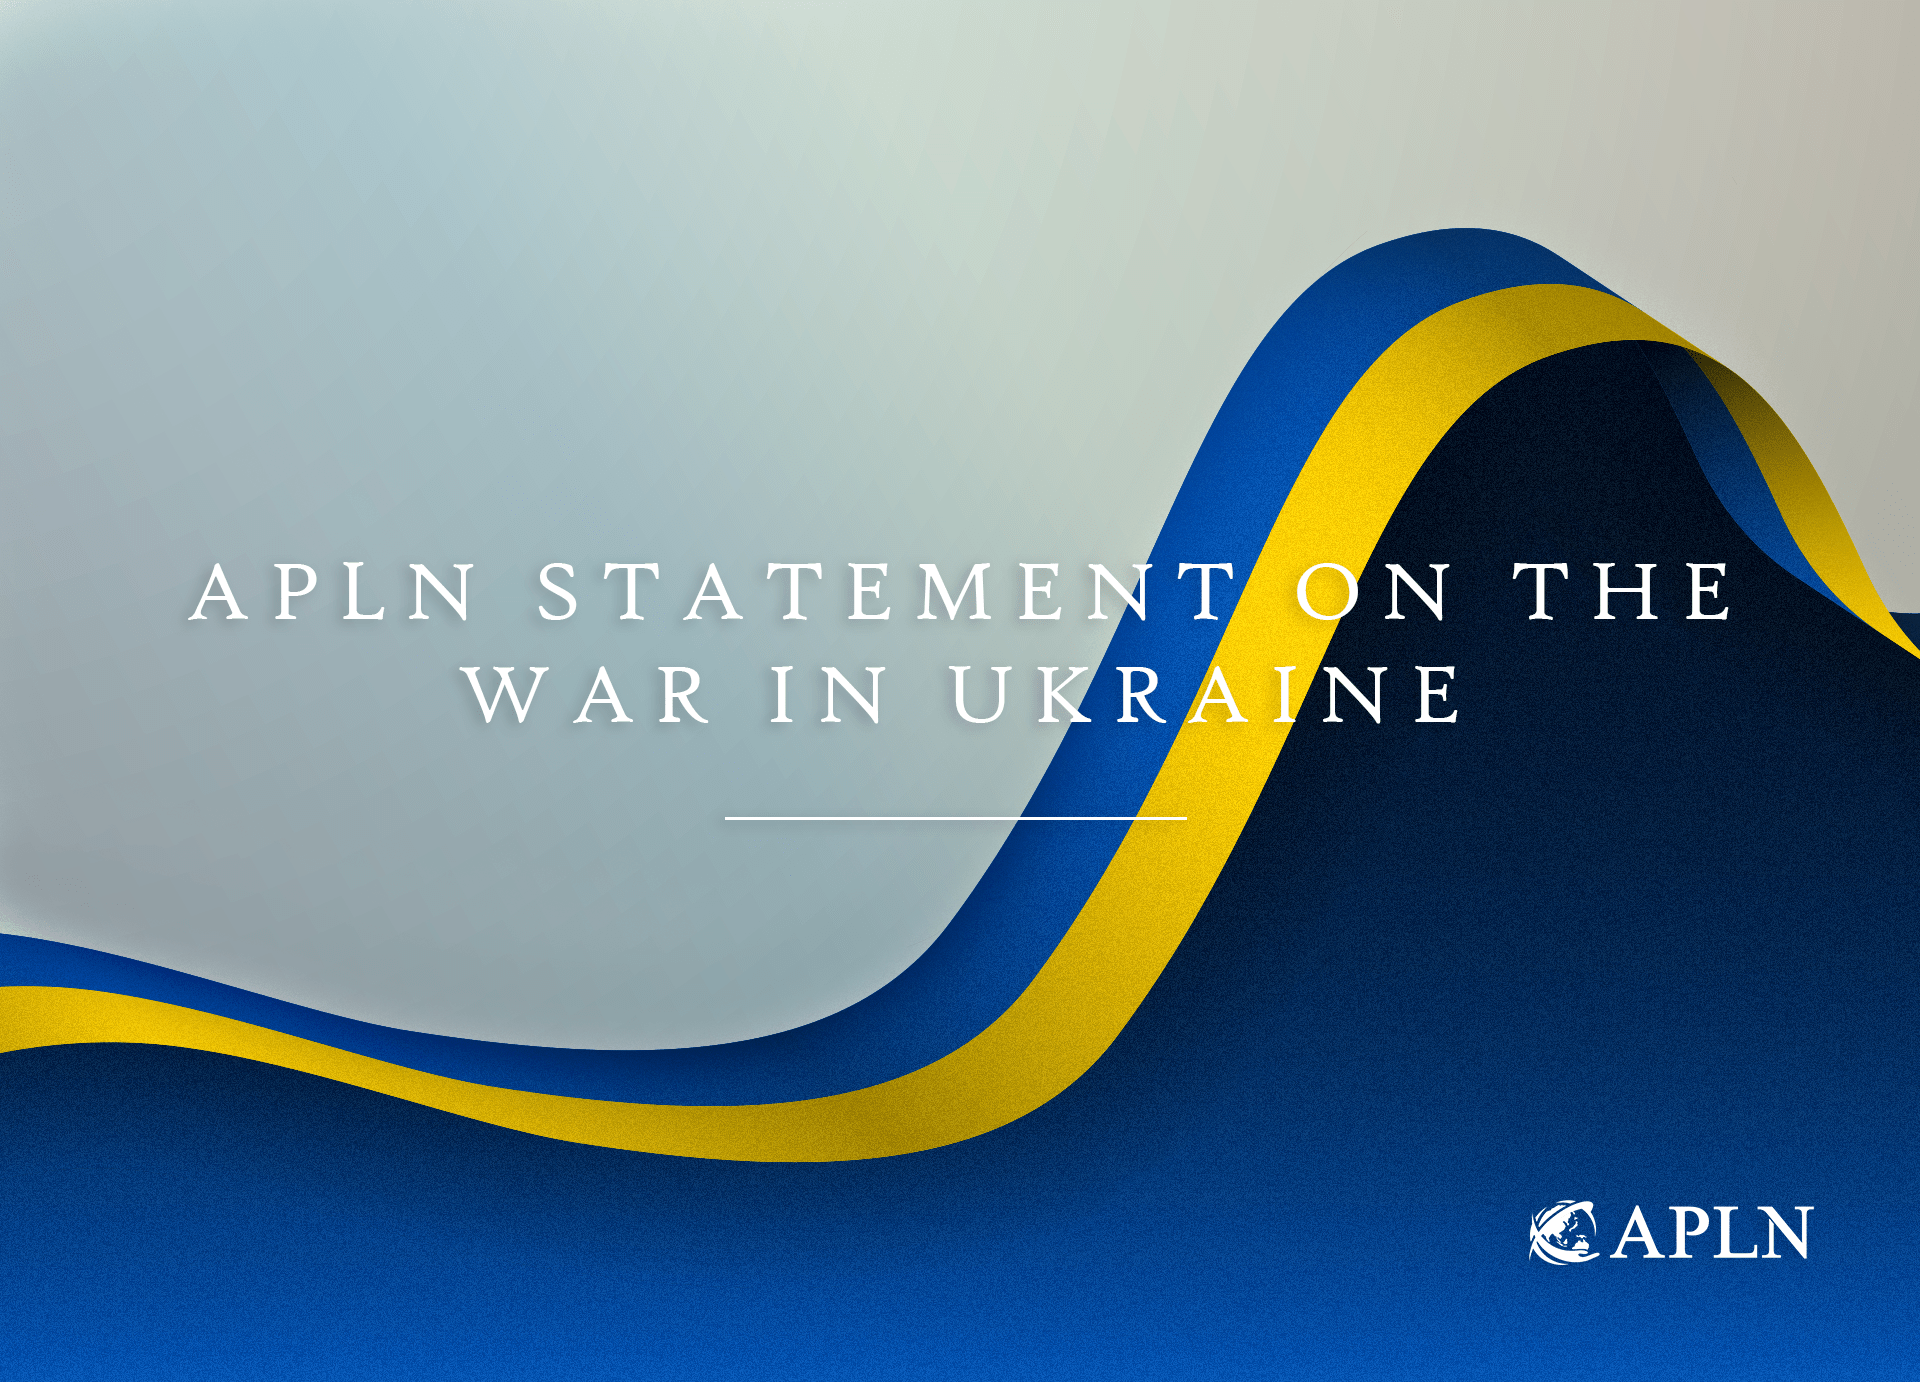 APLN Statement on the War in Ukraine